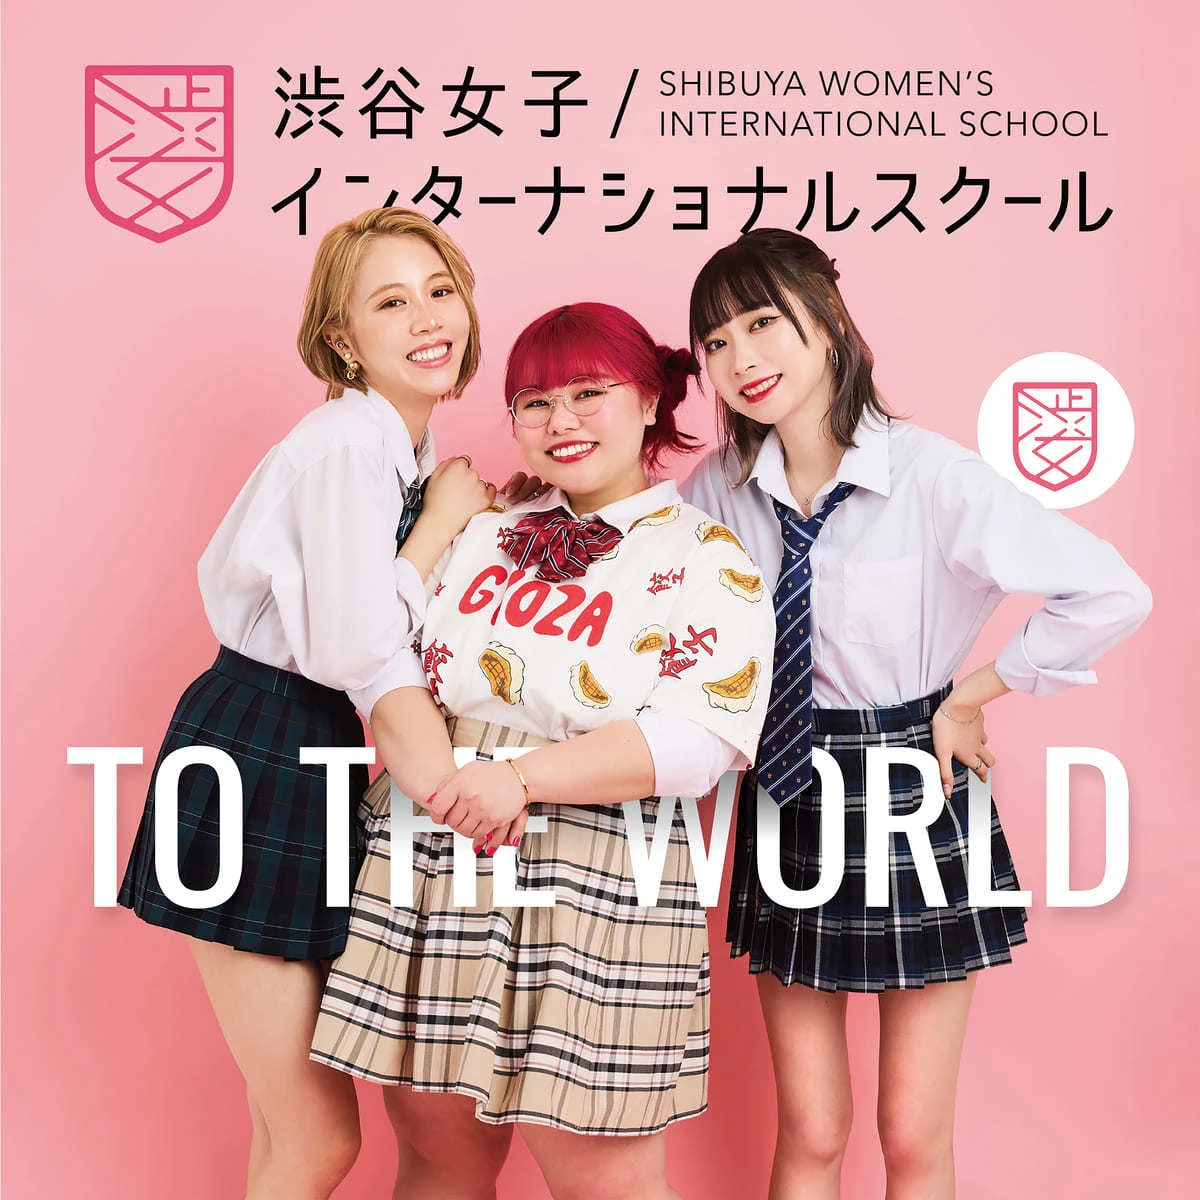 渋谷女子インターナショナルスクール